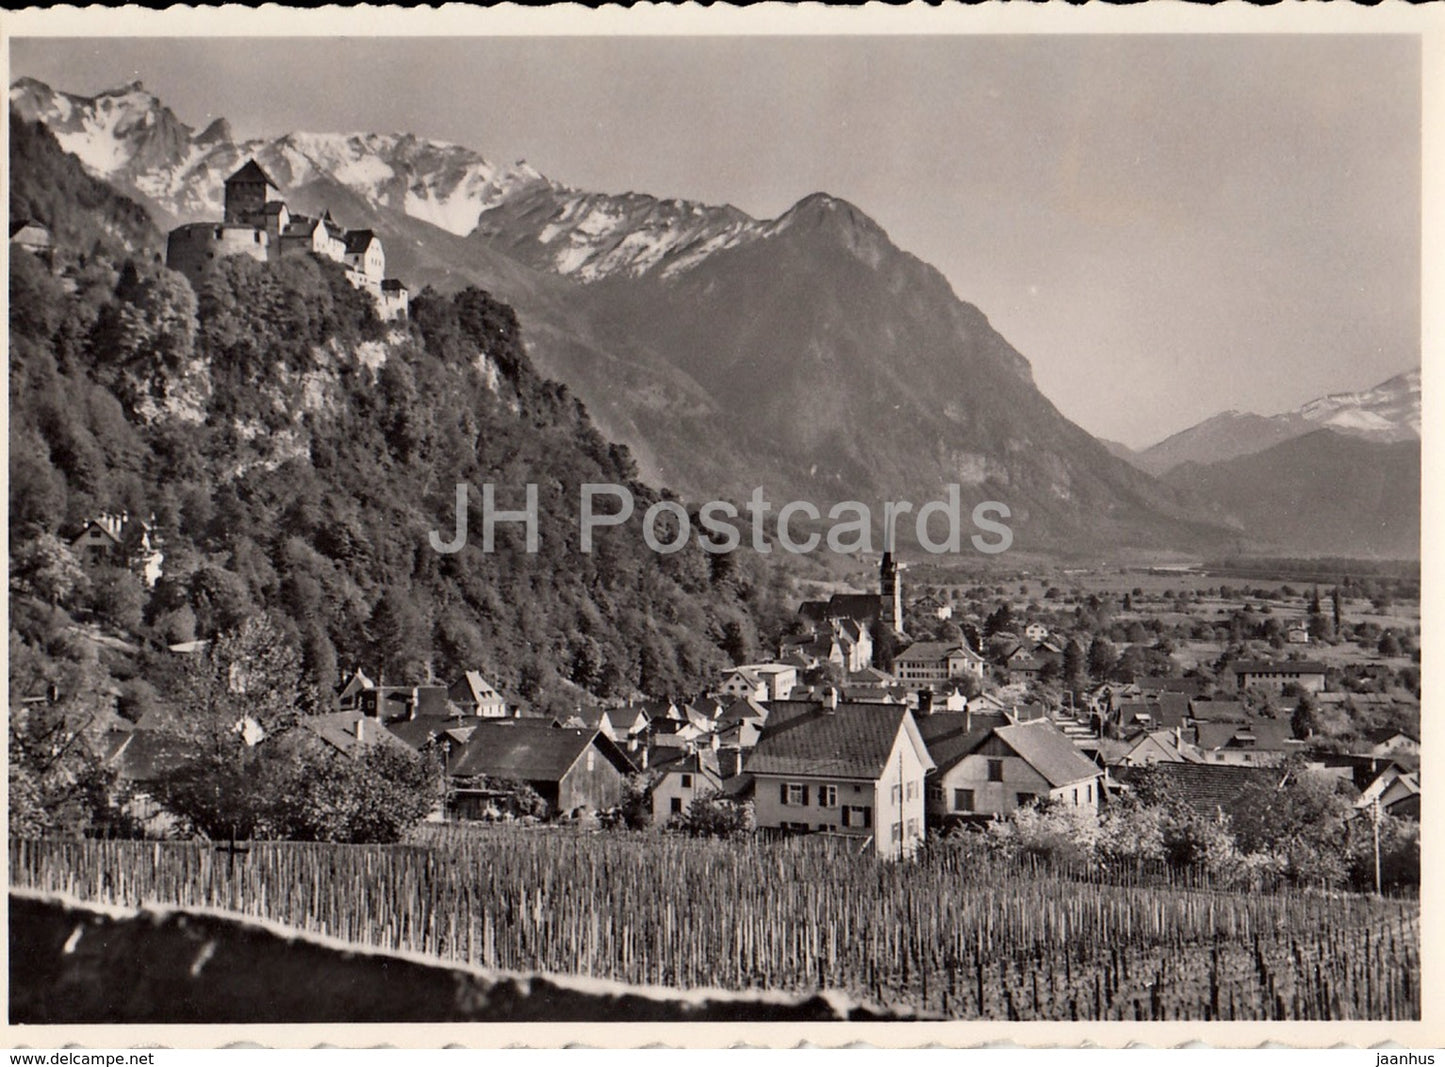 Fürstentum Liechtenstein - Vaduz mit Schloss - castle - 118 - Liechtenstein - unused - JH Postcards